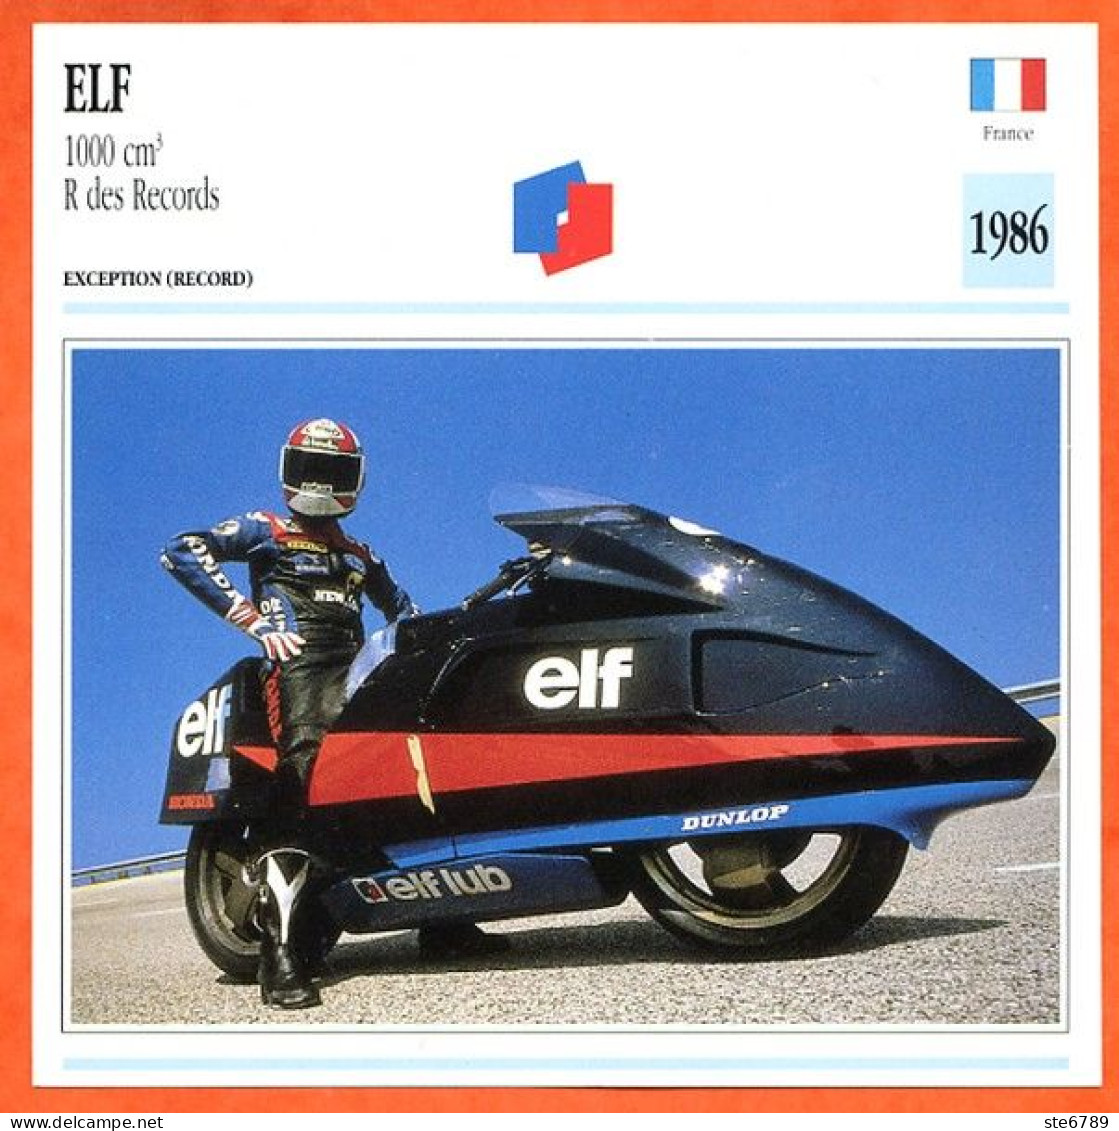 ELF 1000 R Records  1986 France Fiche Technique Moto - Sports